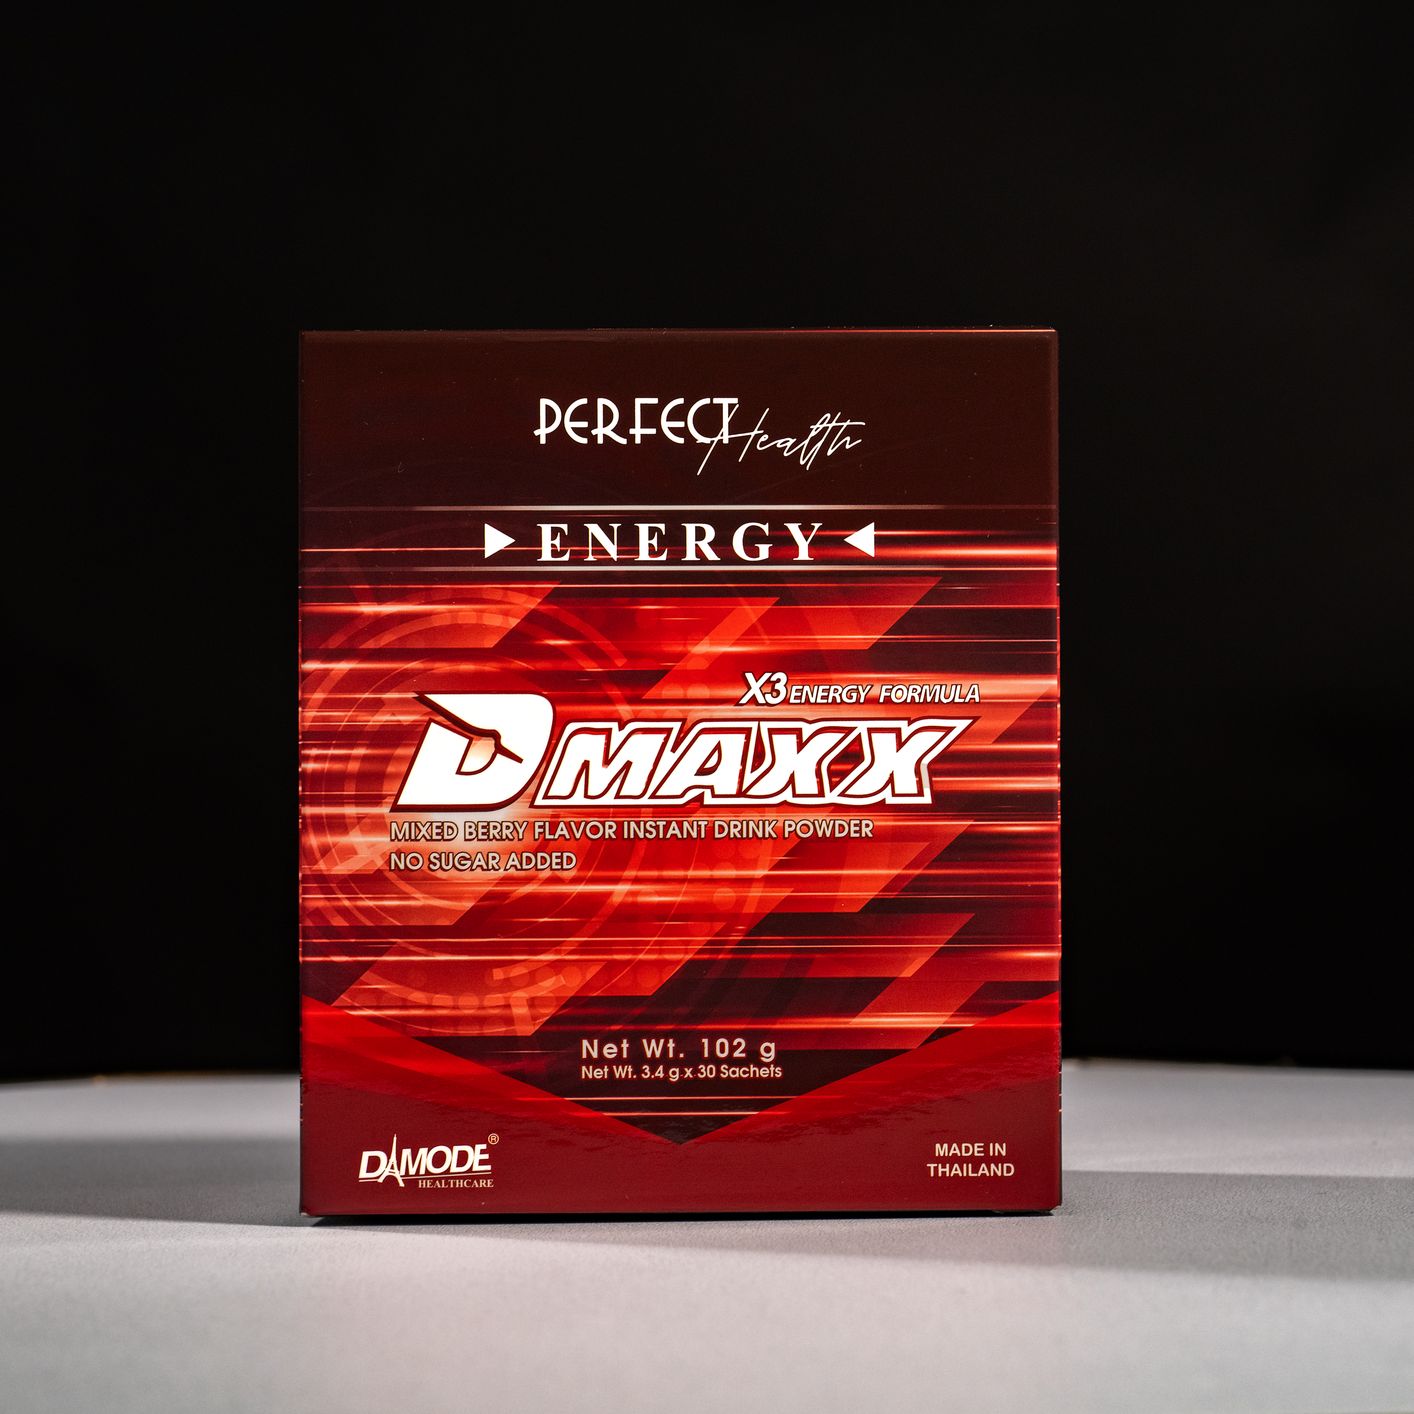 DMAXX – Thức uống bổ sung năng lượng, giúp bạn tỉnh táo suốt cả ngày làm việc